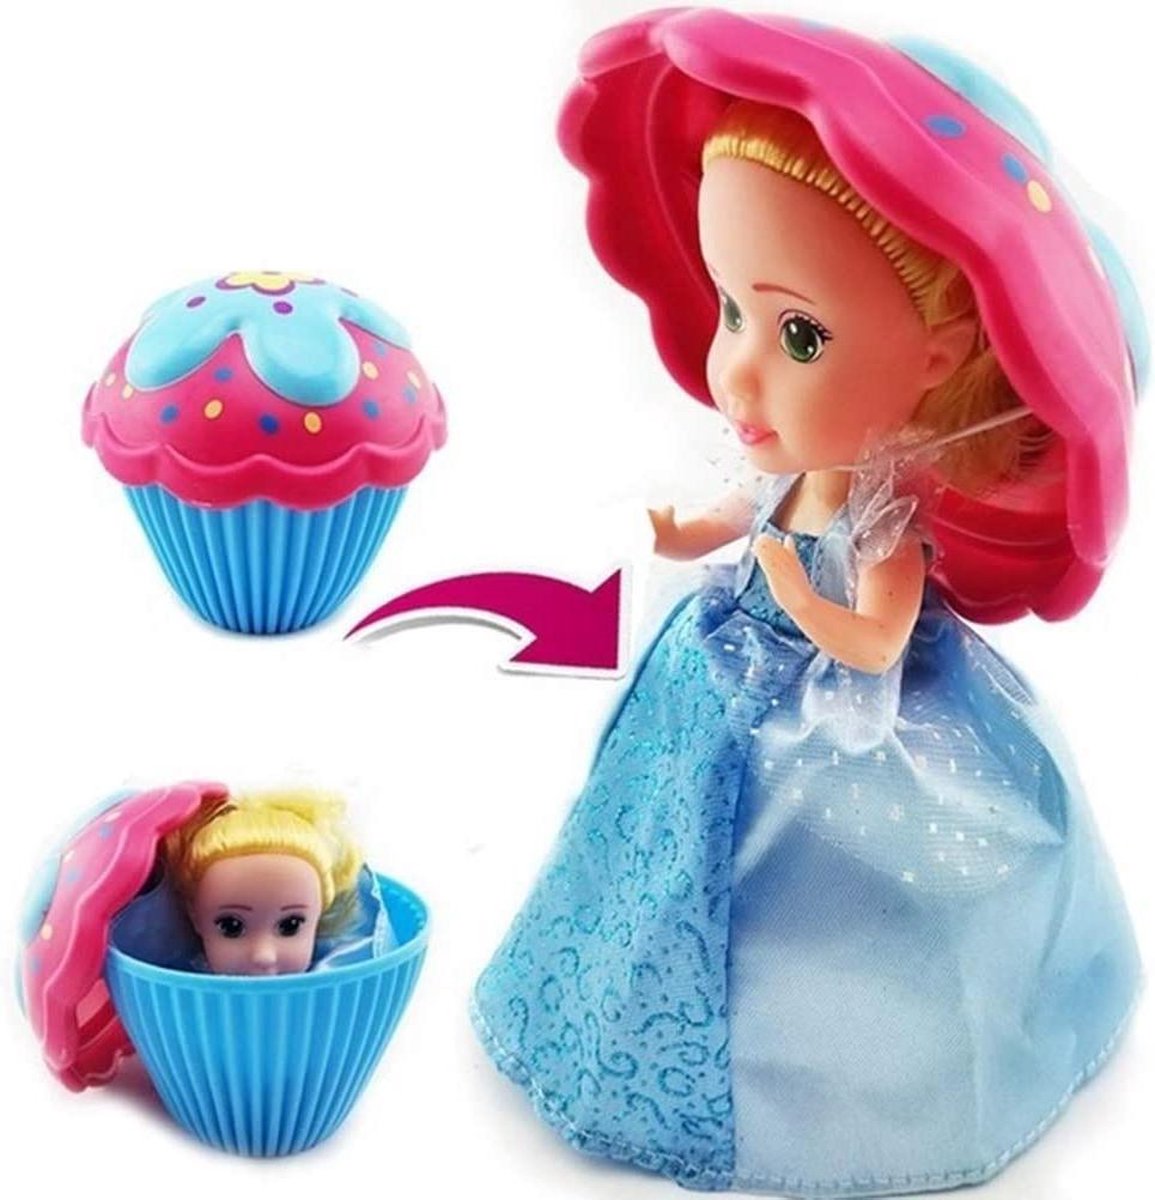 Boti Cupcake Surprise Doll - Verander Je Cupcake In Een Heerlijk Geurend Prinsessen Pop!